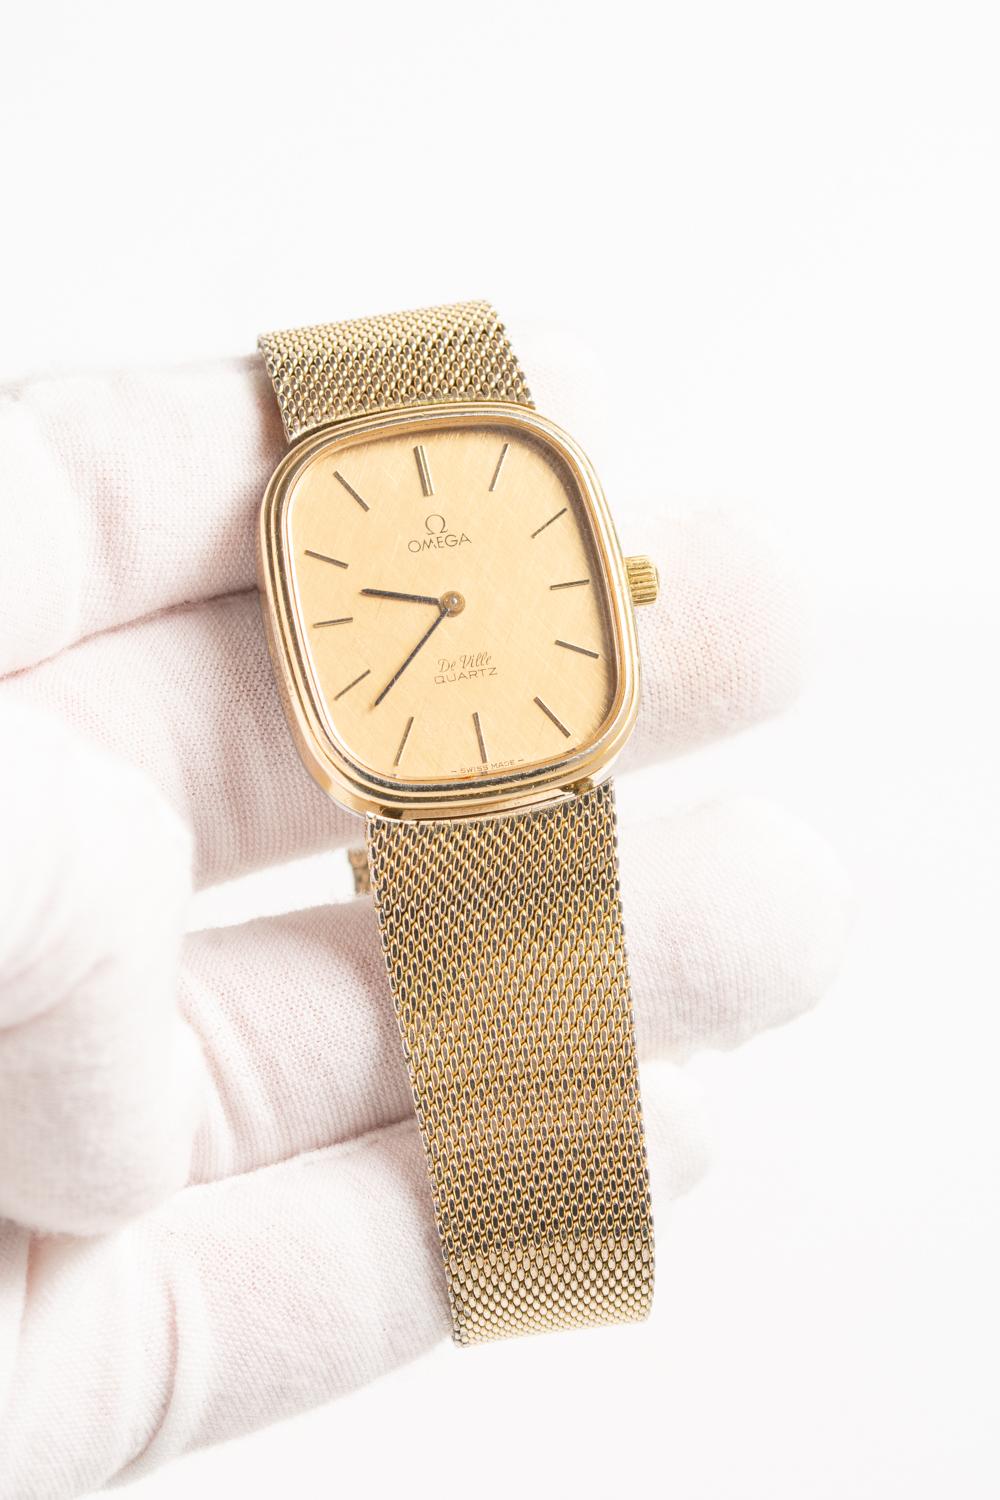 Vintage Omega De Ville Gold Tone Wristwatch 7